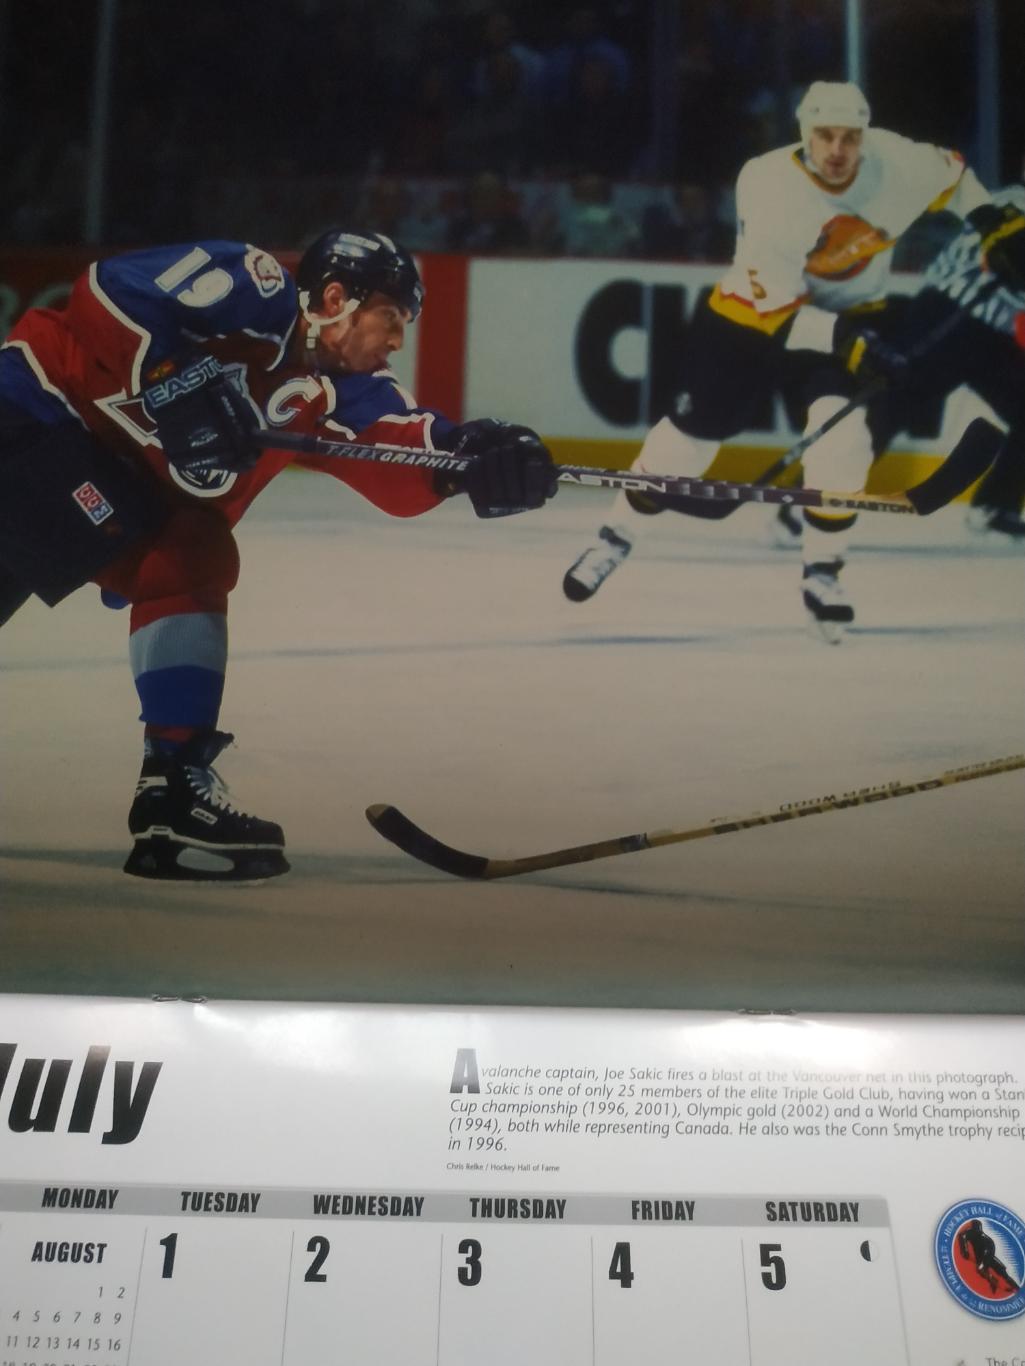 ХОККЕЙ КАЛЕНДАРЬ ЗАЛ СЛАВЫ НХЛ 2014 NHL HOCKEY HALL OF FAME OFFICIAL CALENDAR 5